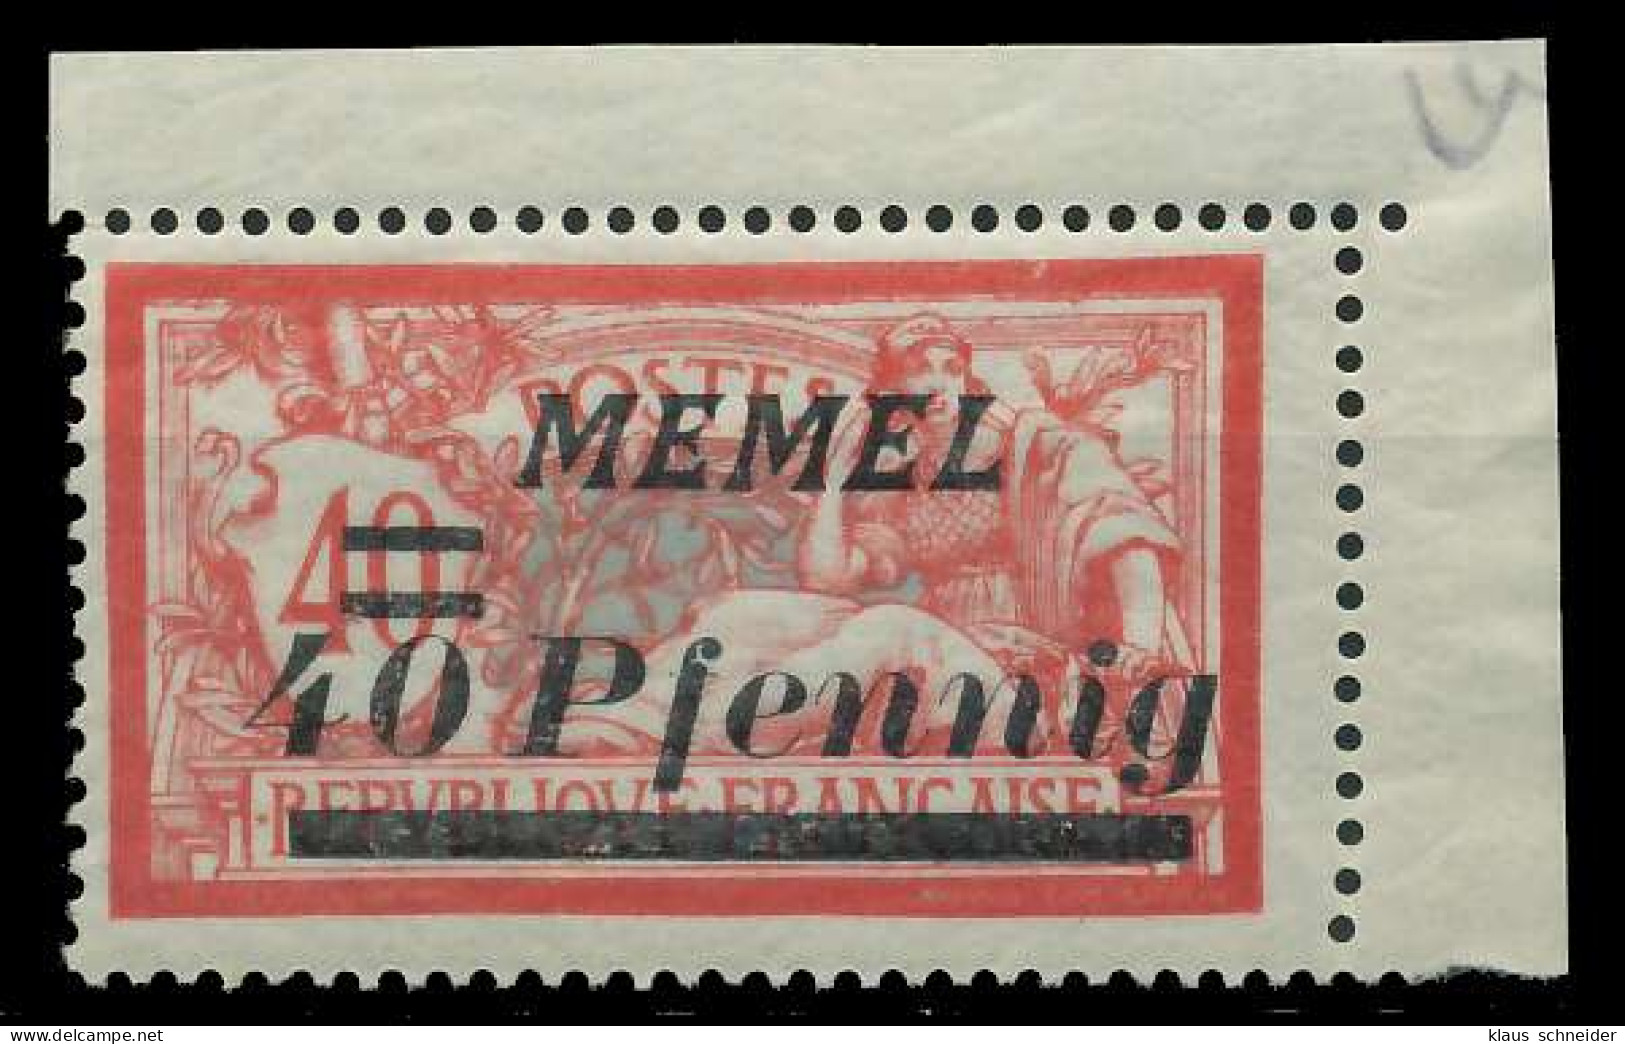 MEMEL 1922 Nr 60 Postfrisch ECKE-ORE X887916 - Memelland 1923